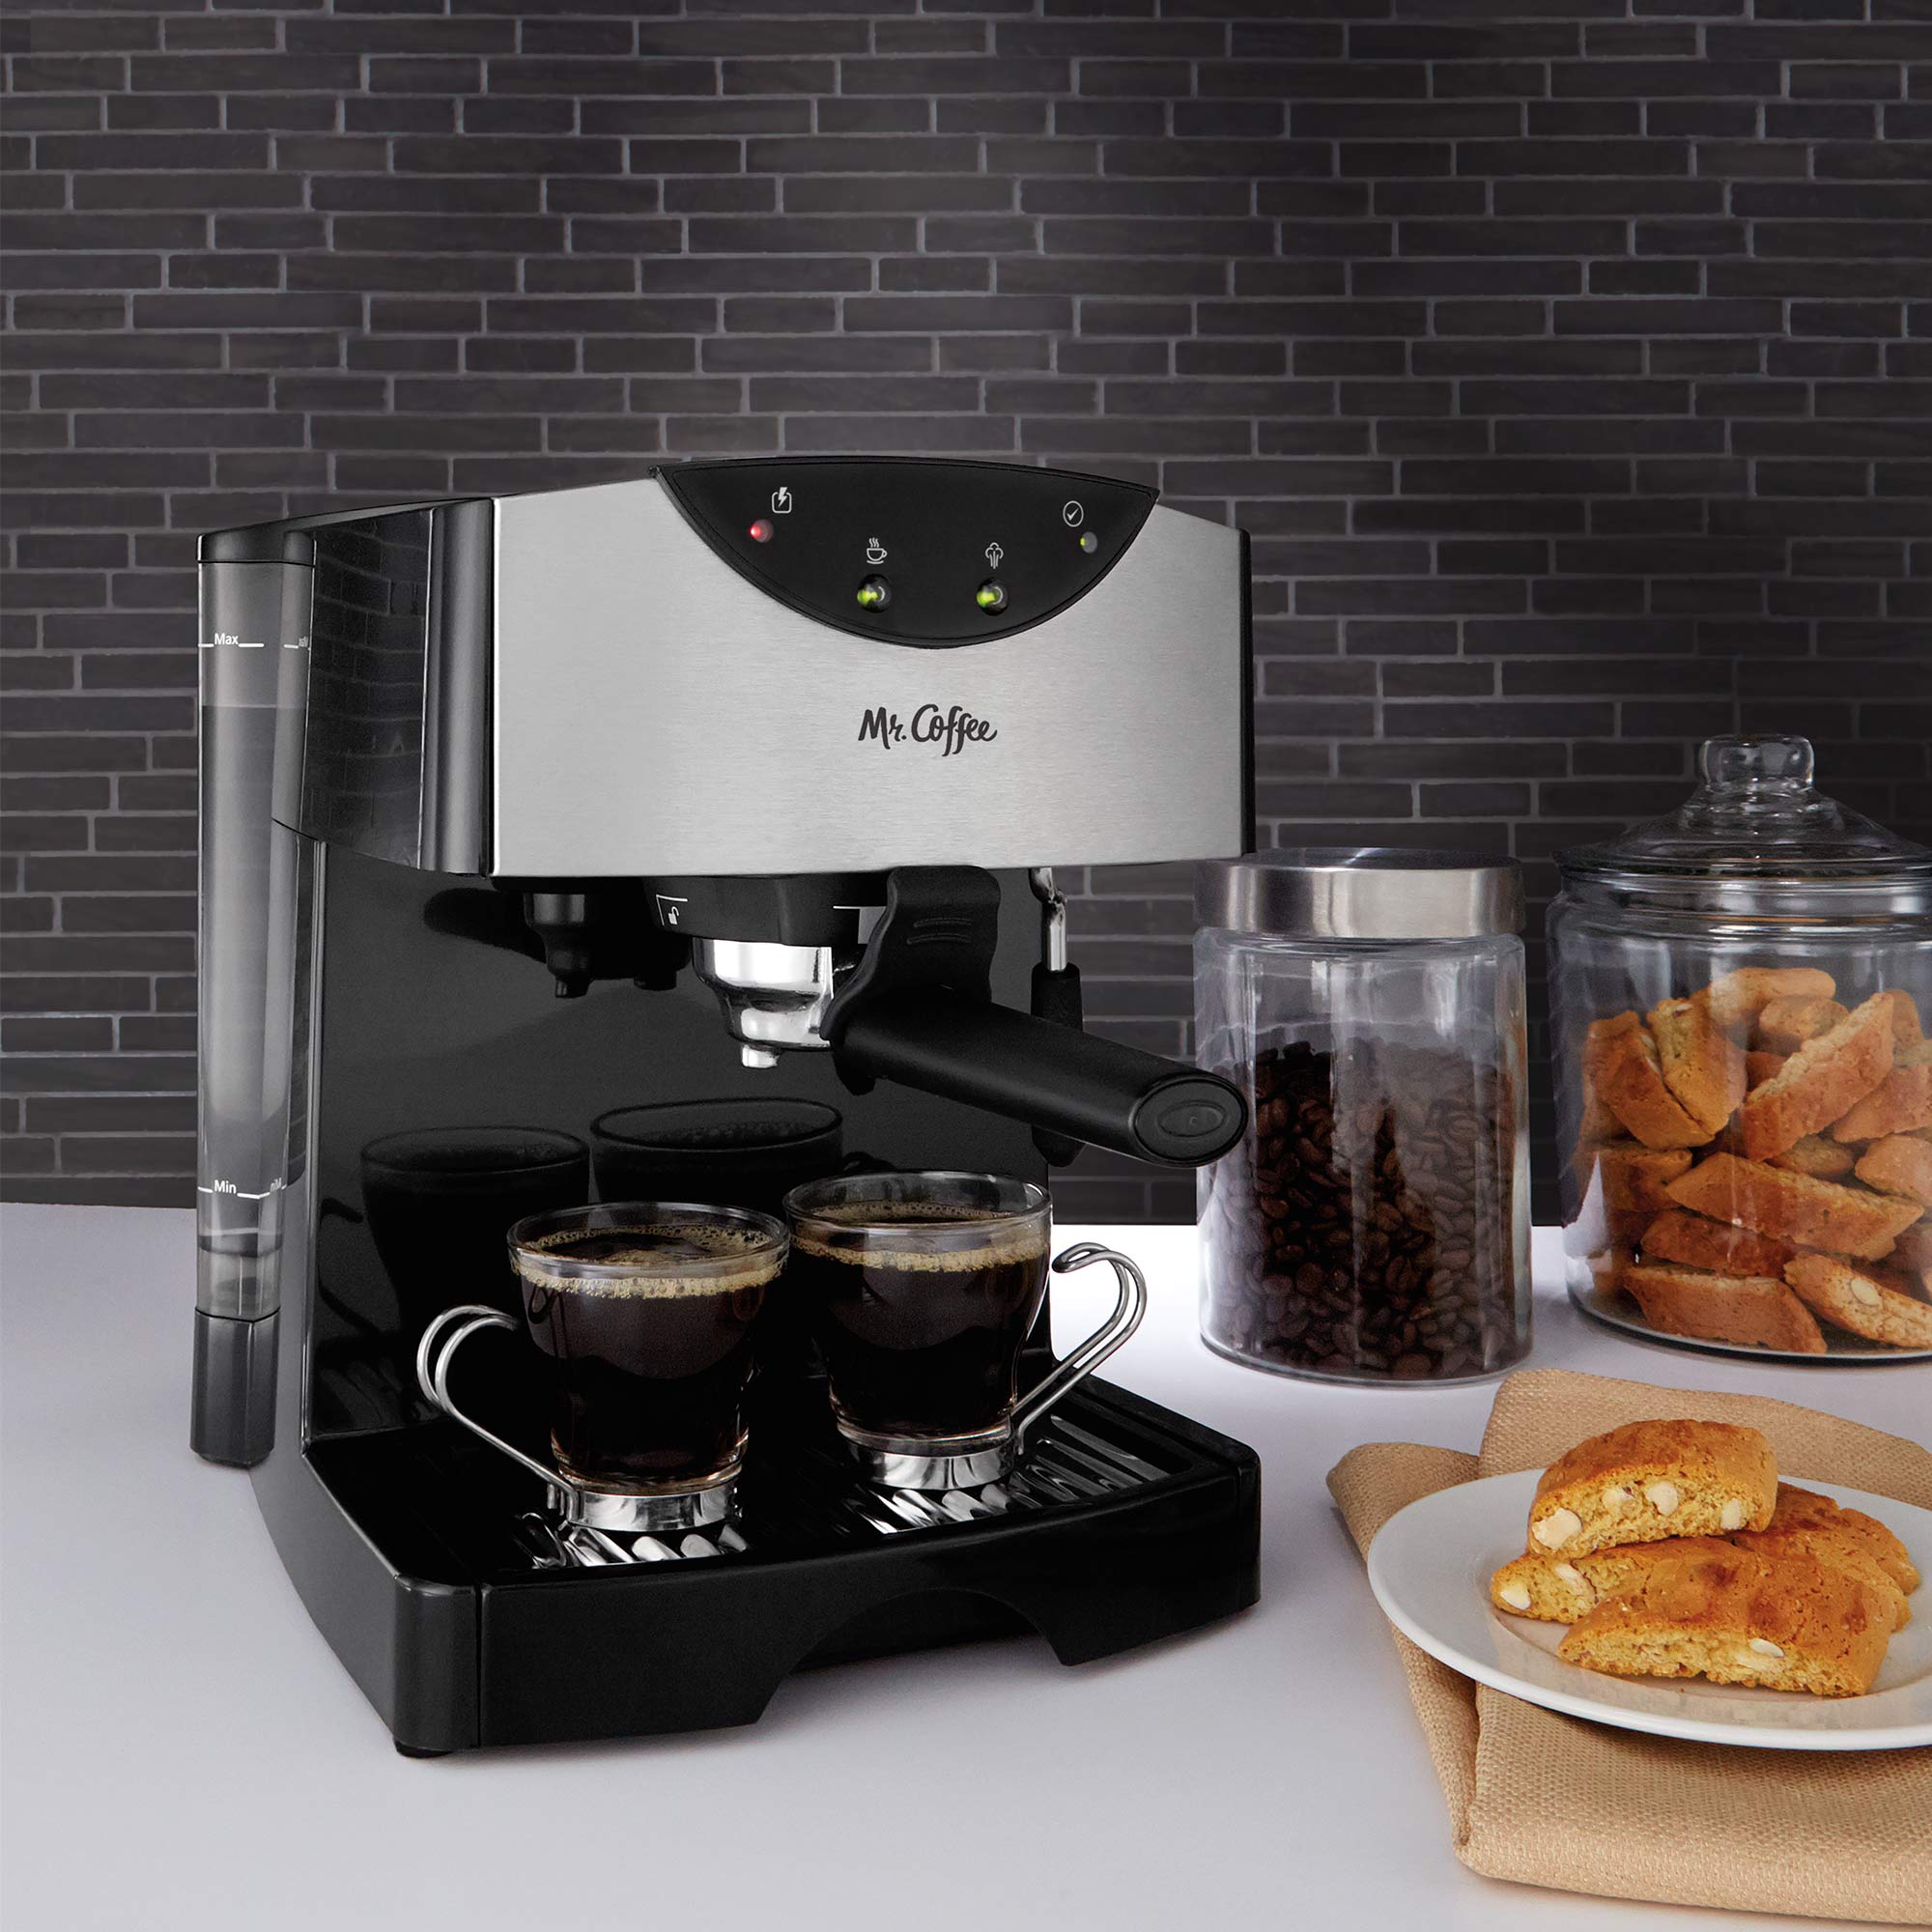 Mr. Coffee 2 Shot Pump Espresso & Cappuccino Maker, Black - image 5 of 8